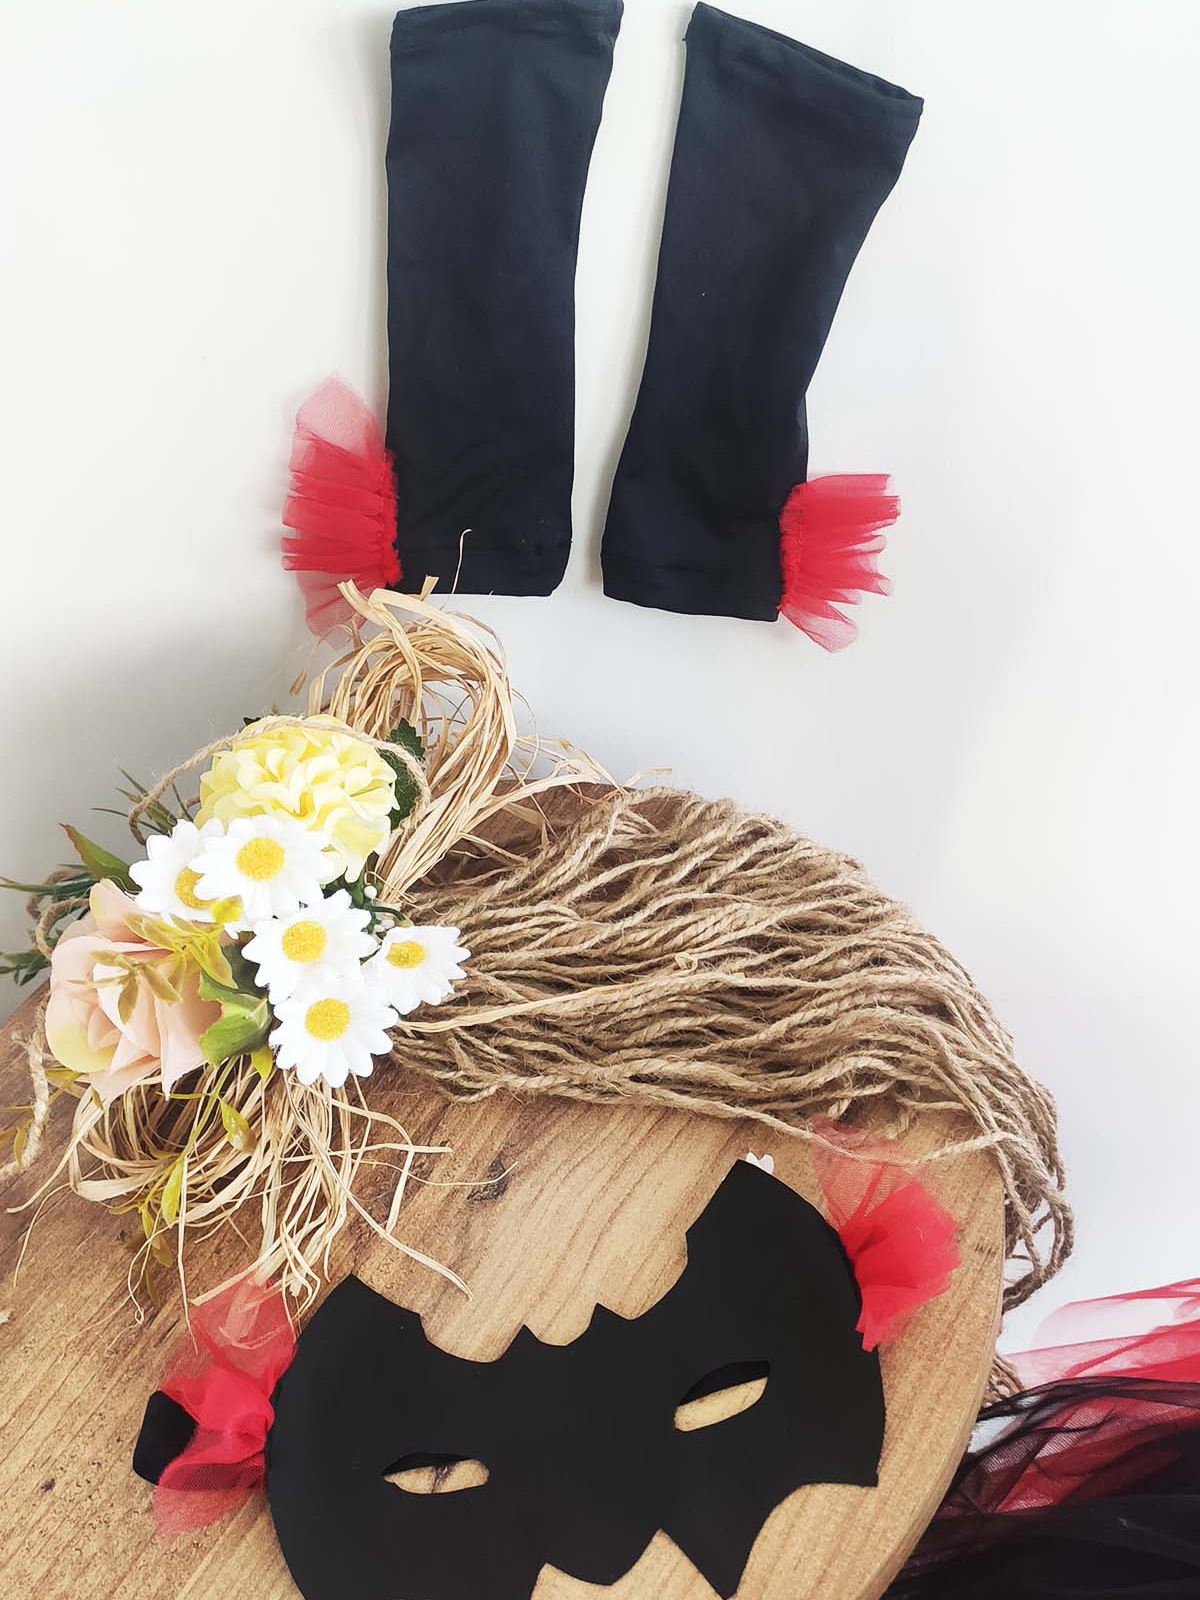 Shecco Babba Tek Omuz Tütü Maske Eldiven 3'lü Set, Parti Elbisesi, Doğum Günü Kostümü Kırmızı-Siyah